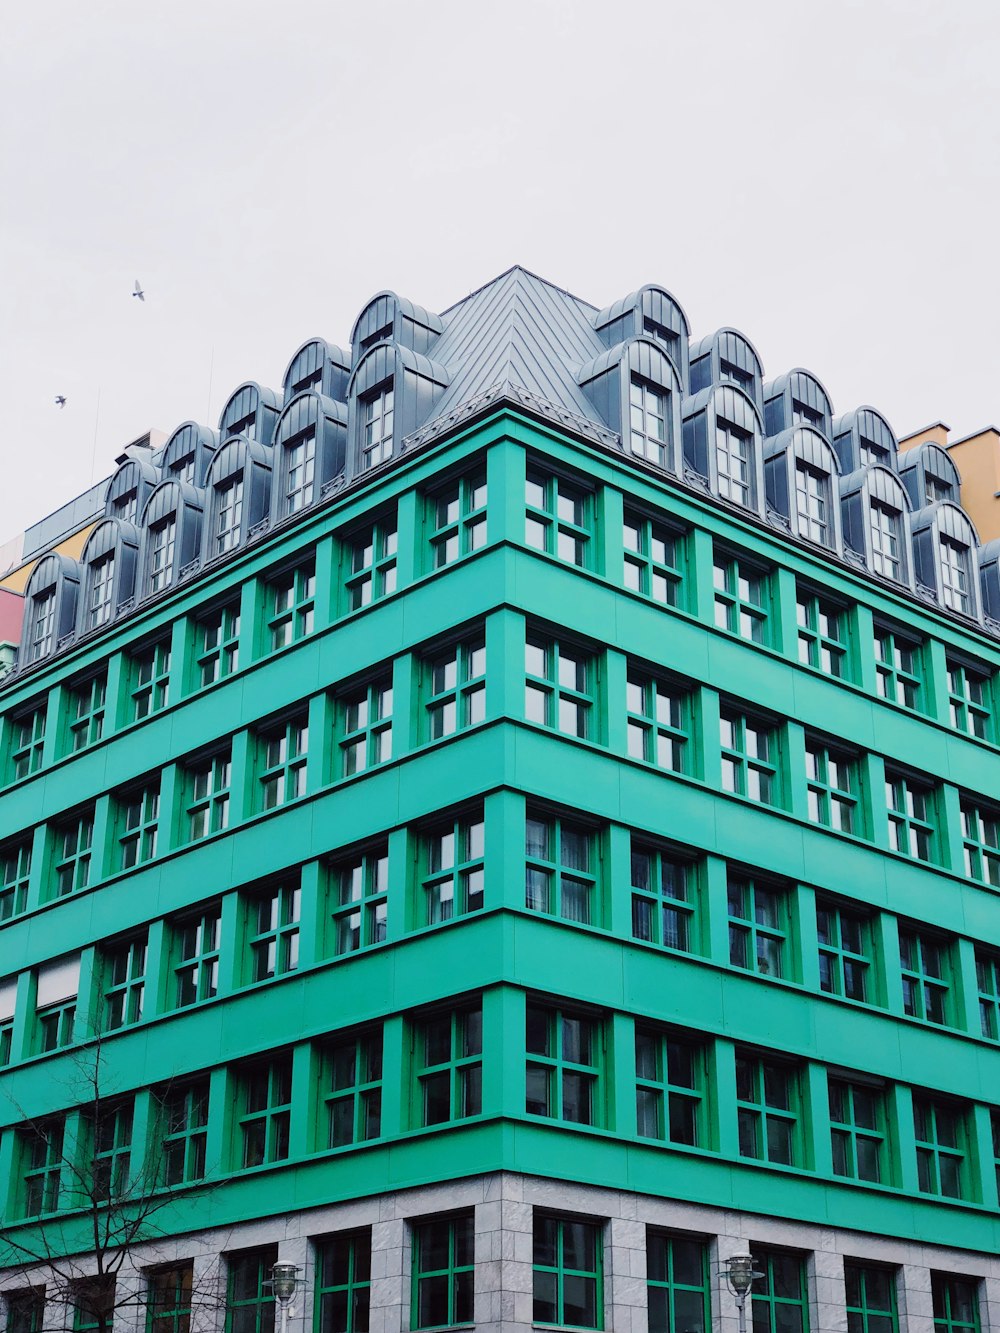 Edificio de hormigón verde azulado y gris